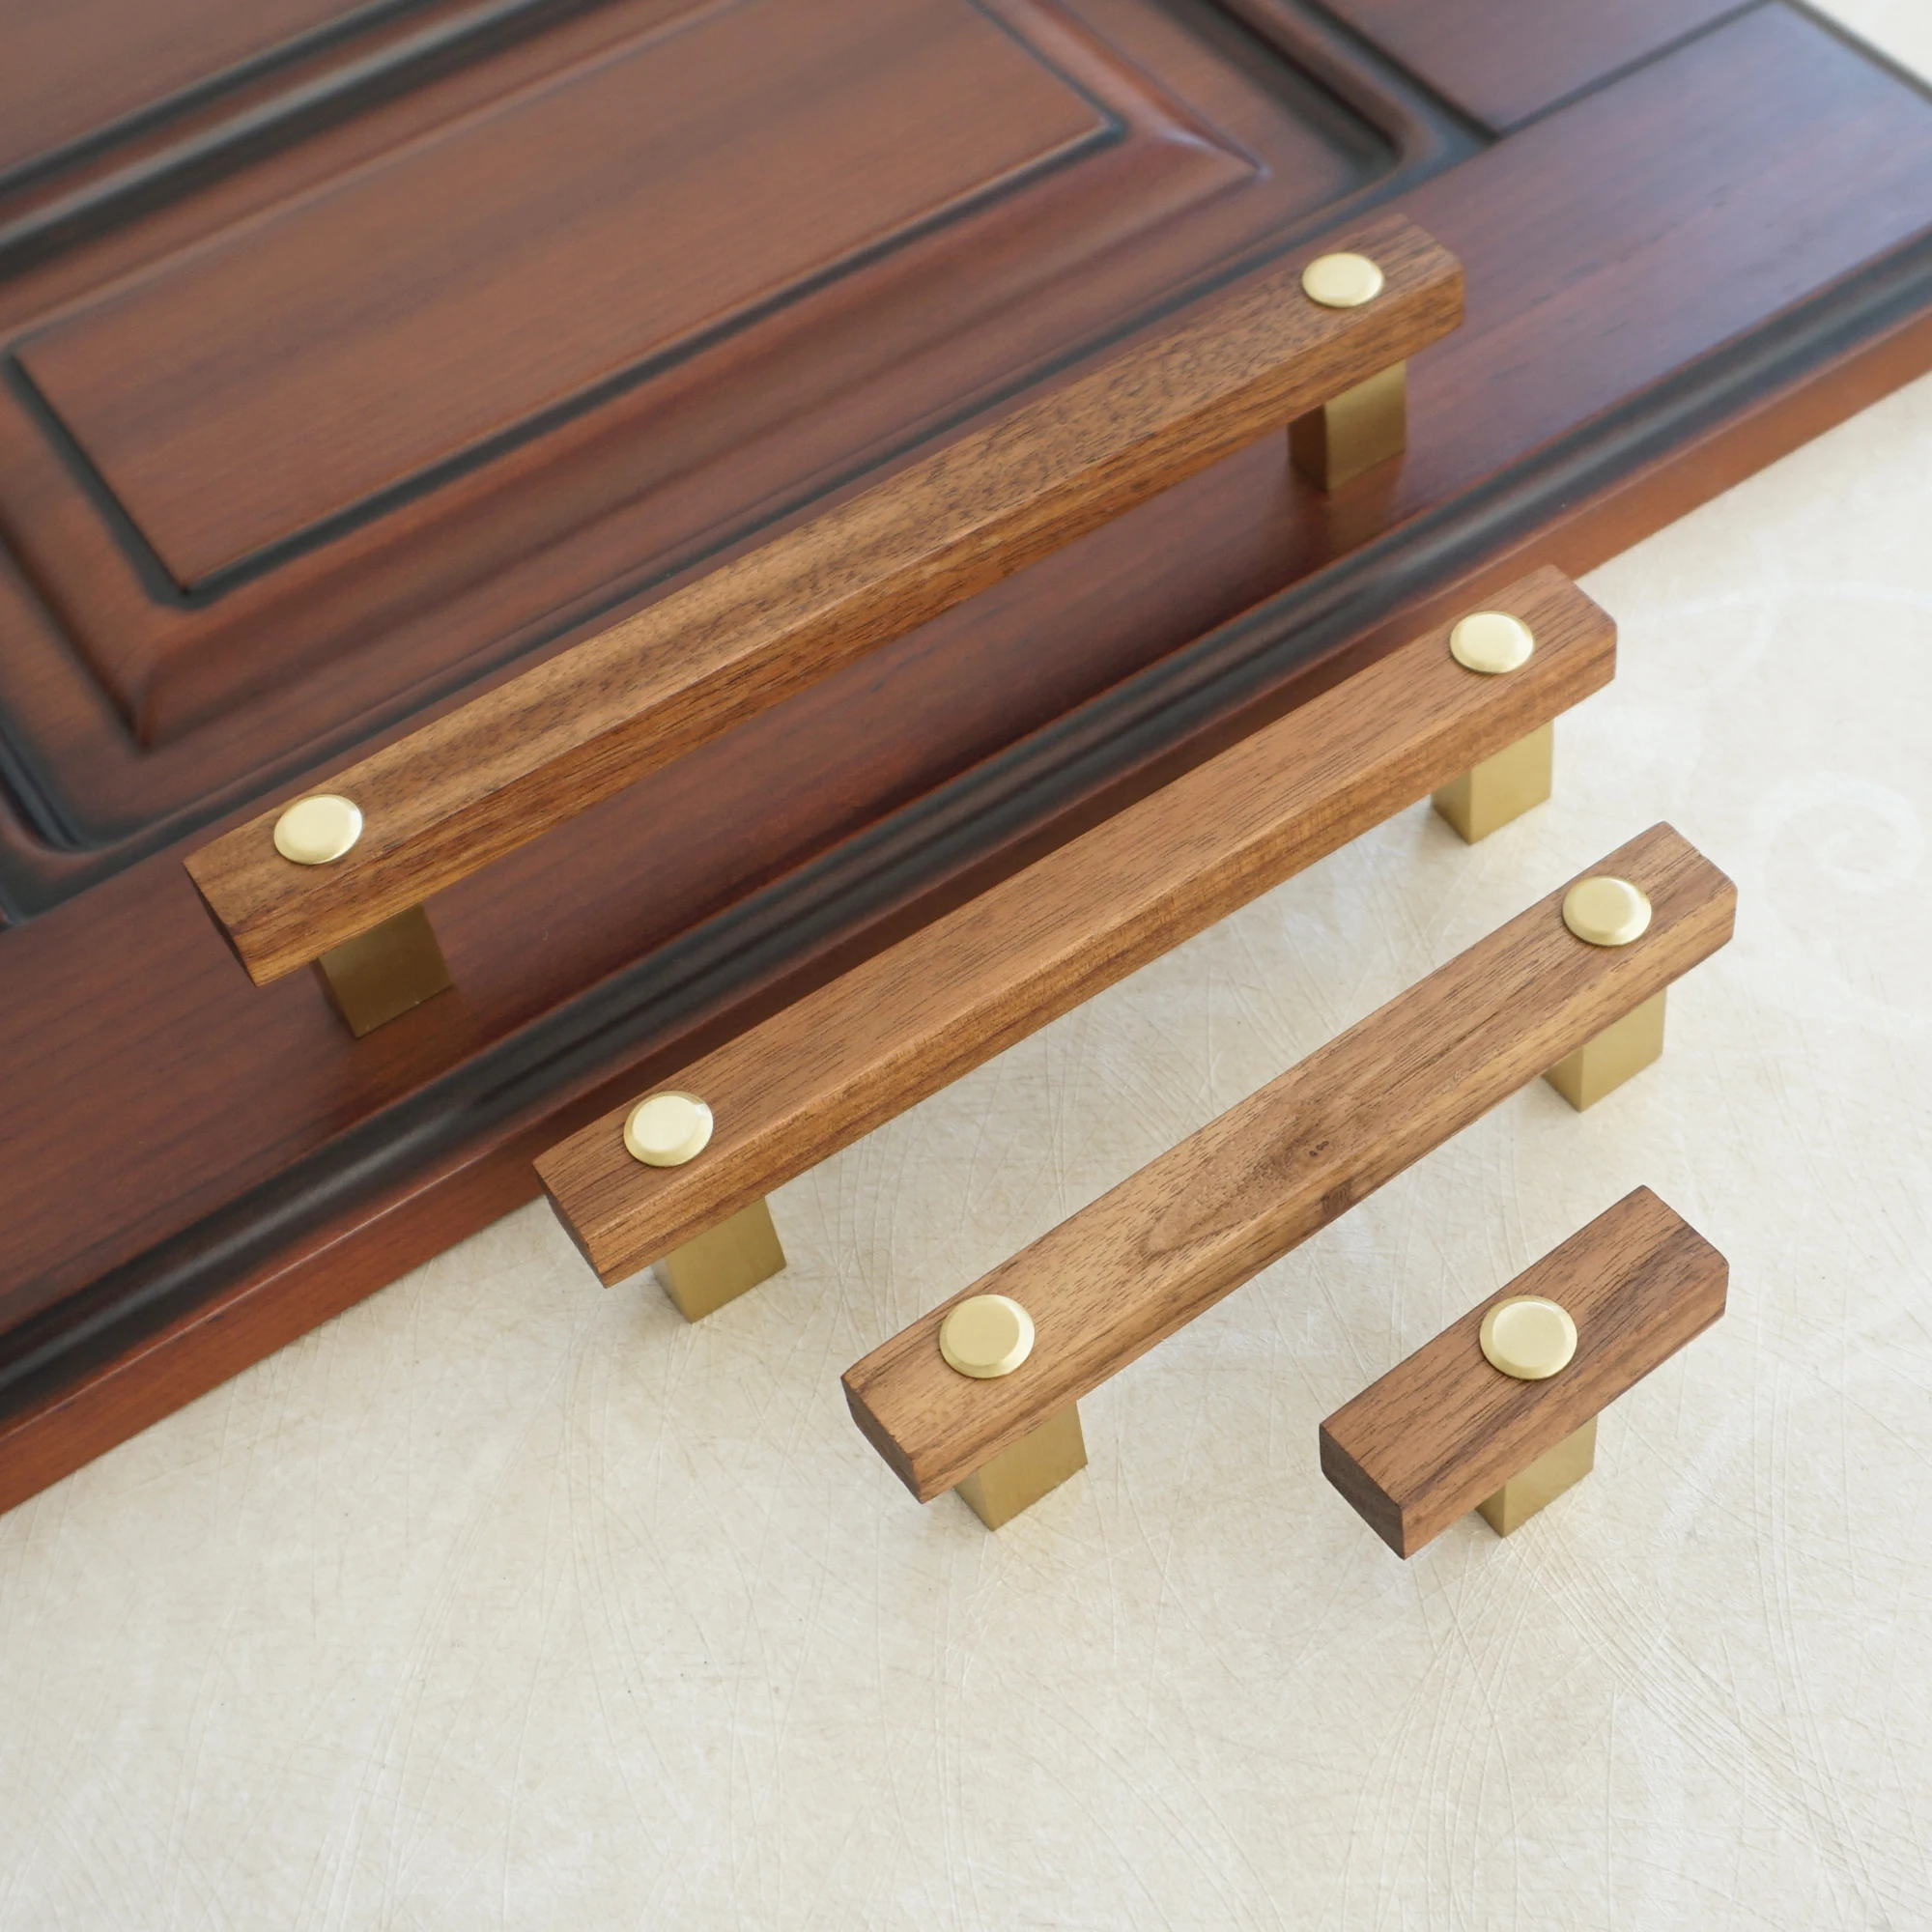 3 75 5 6 3 8 8 Brown Leather Door Pull Handles Copper Cabinet